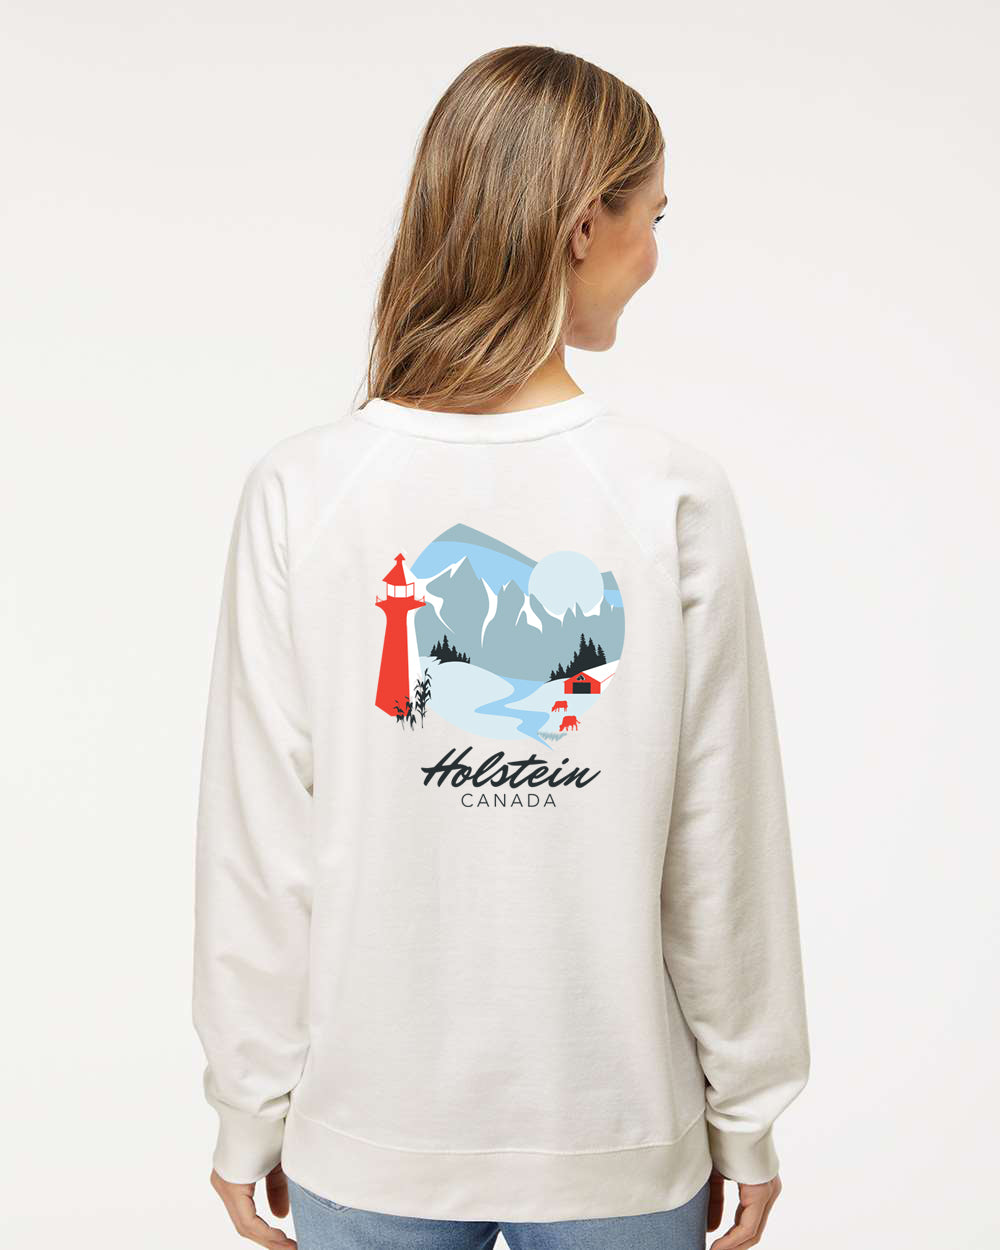 Across Canada - Holstein Canada Sweatshirt